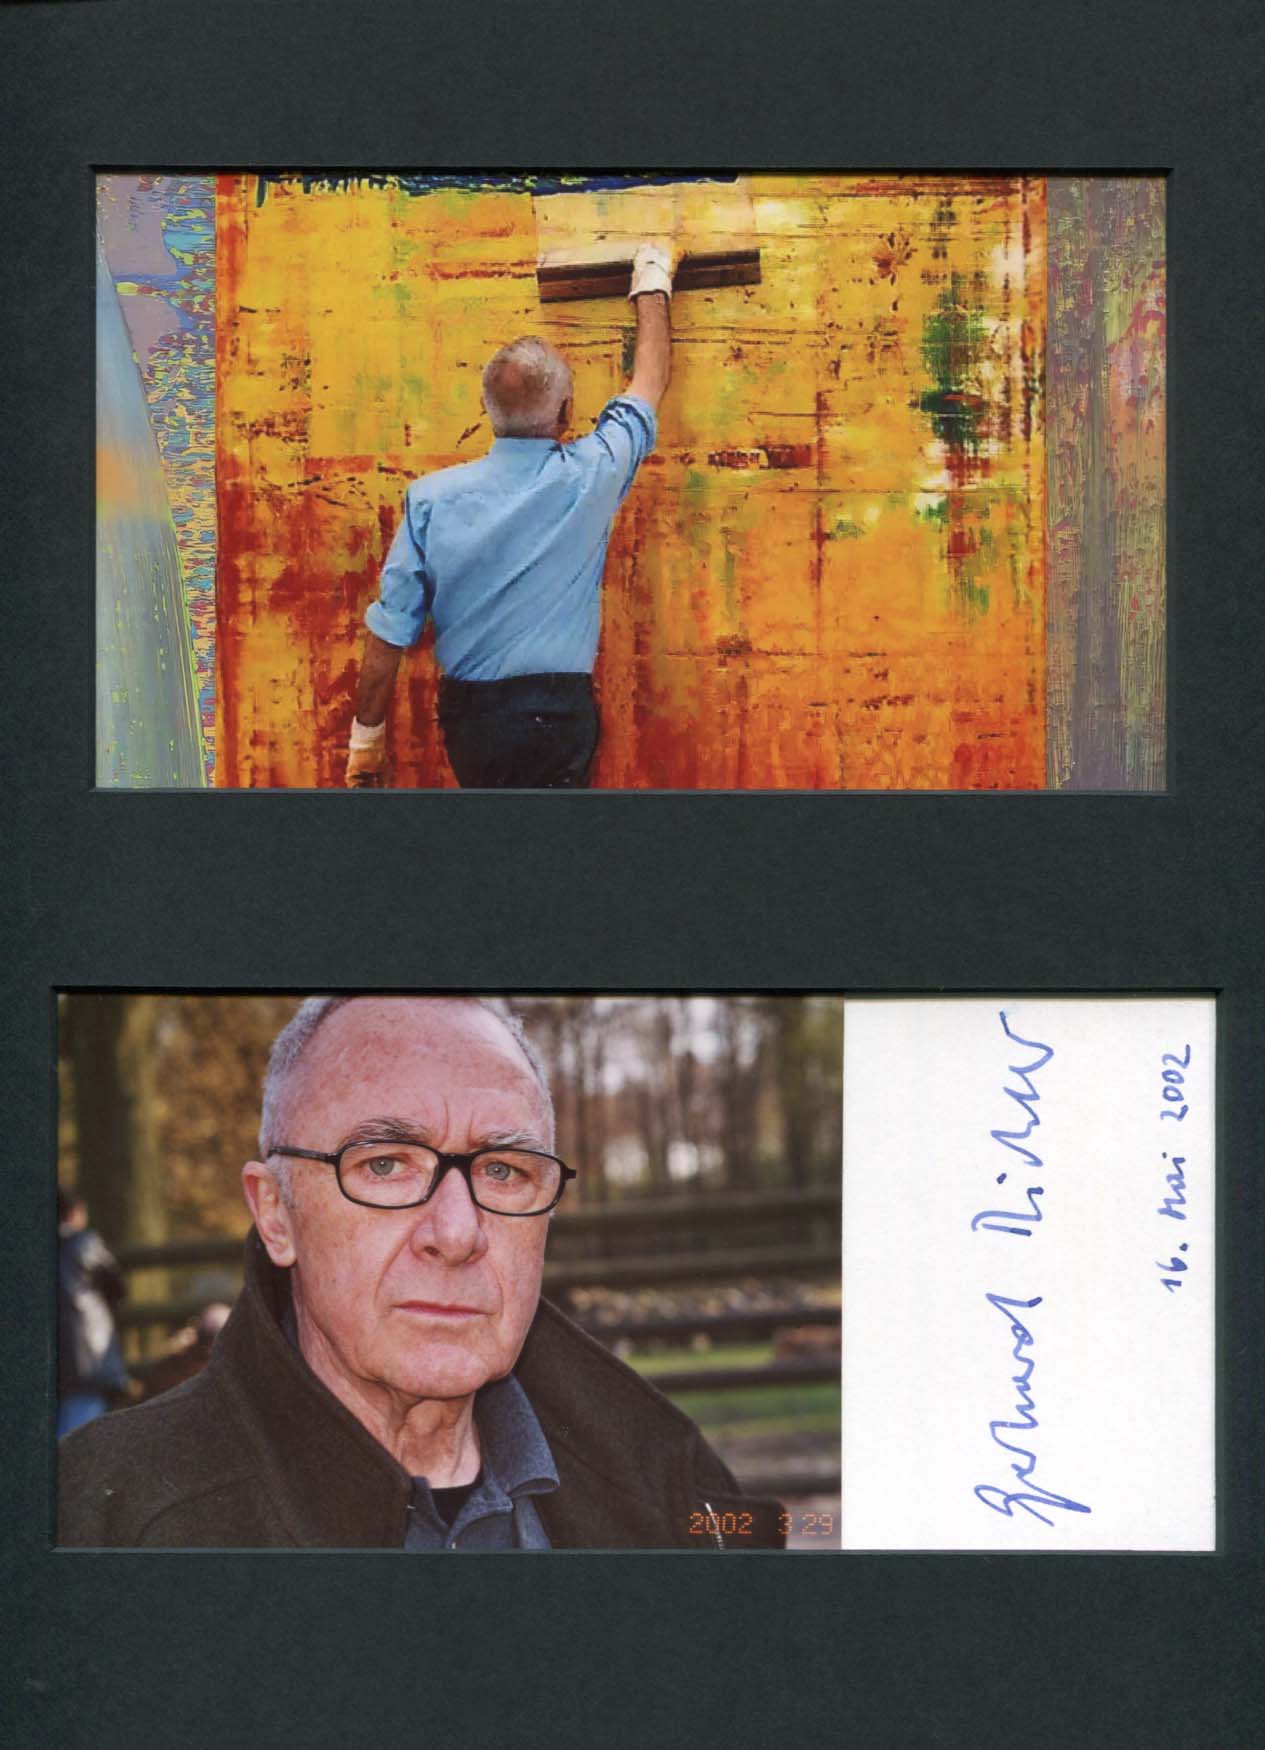 Gerhard Richter Autograph Autogramm | ID 8197518950549